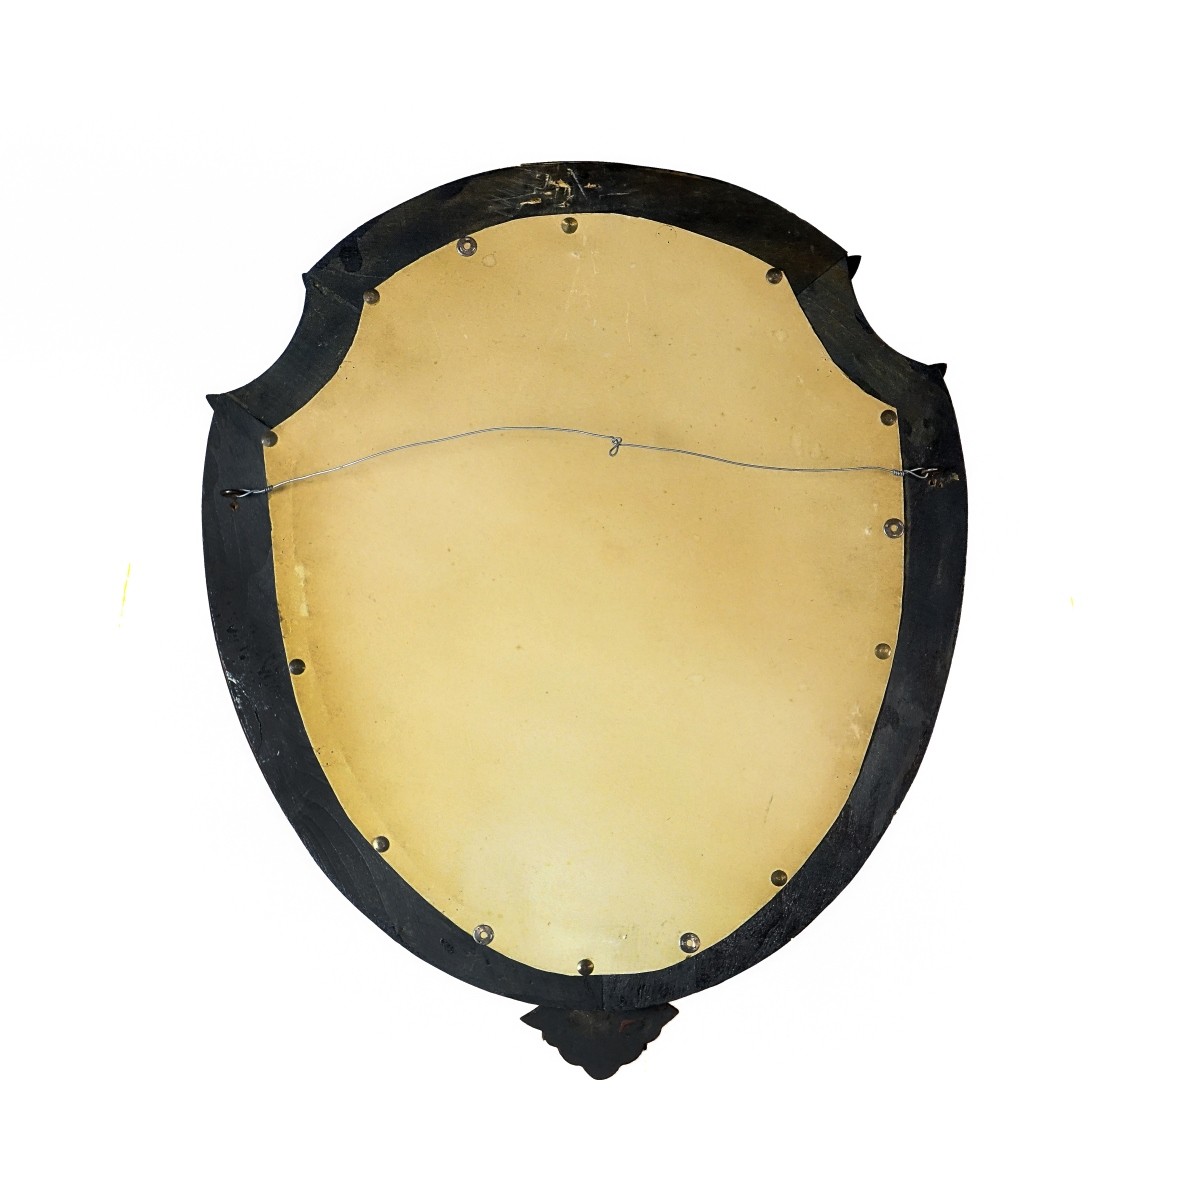 Vintage Venetian Style Shield Shape Mirror